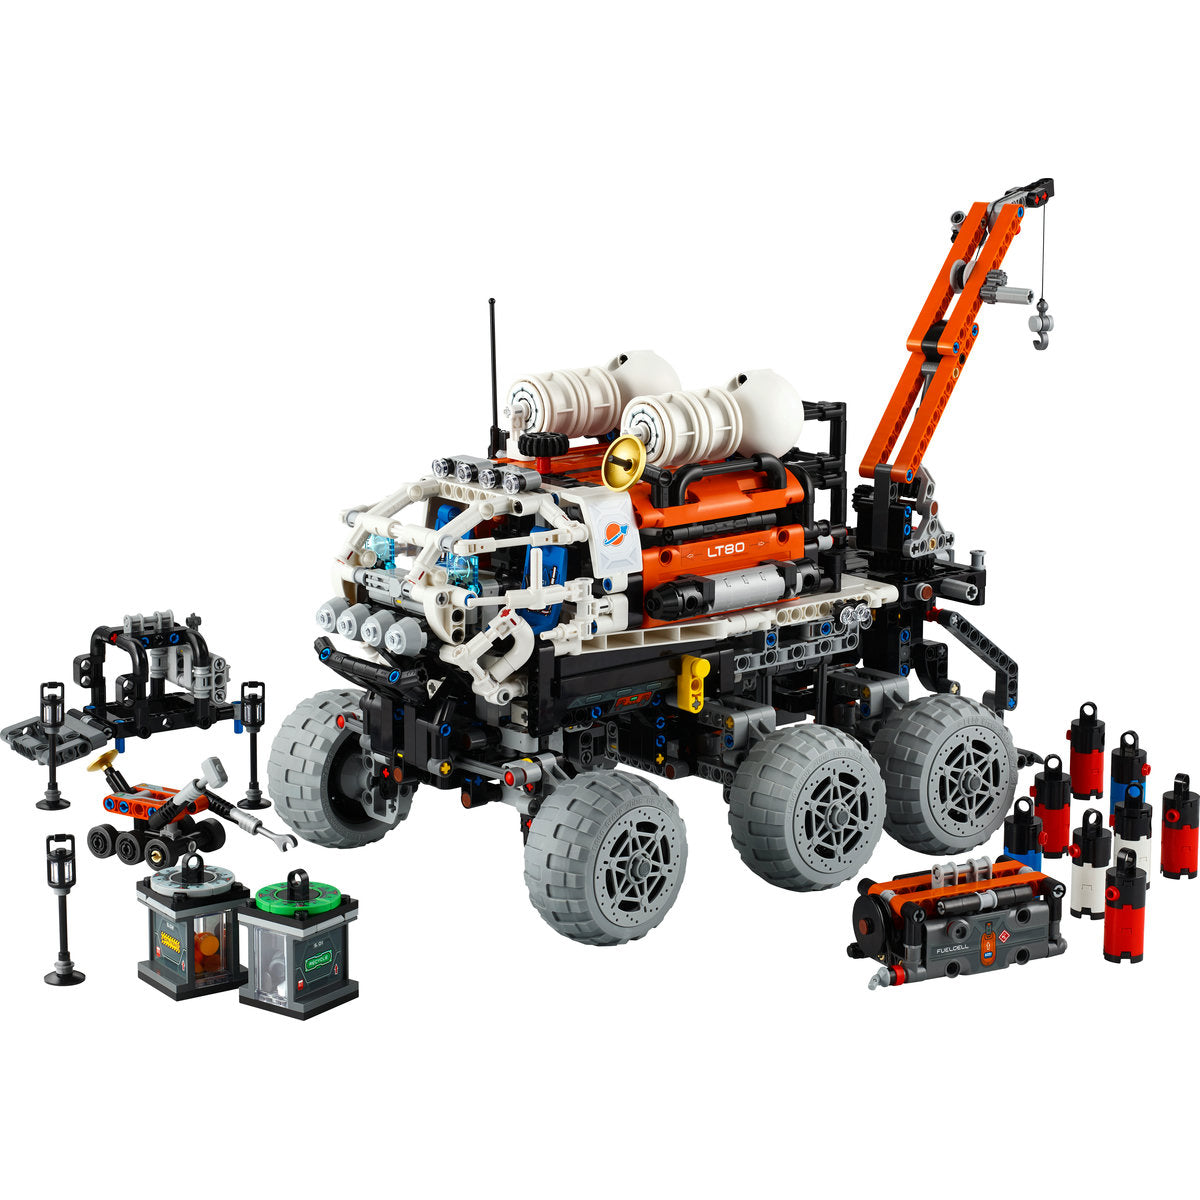 ROVER DE EXPLORARE PE MARTE CU ECHIPAJ - LEGO TECHNIC - LEGO (42180) - Libelula Vesela - Jucarii